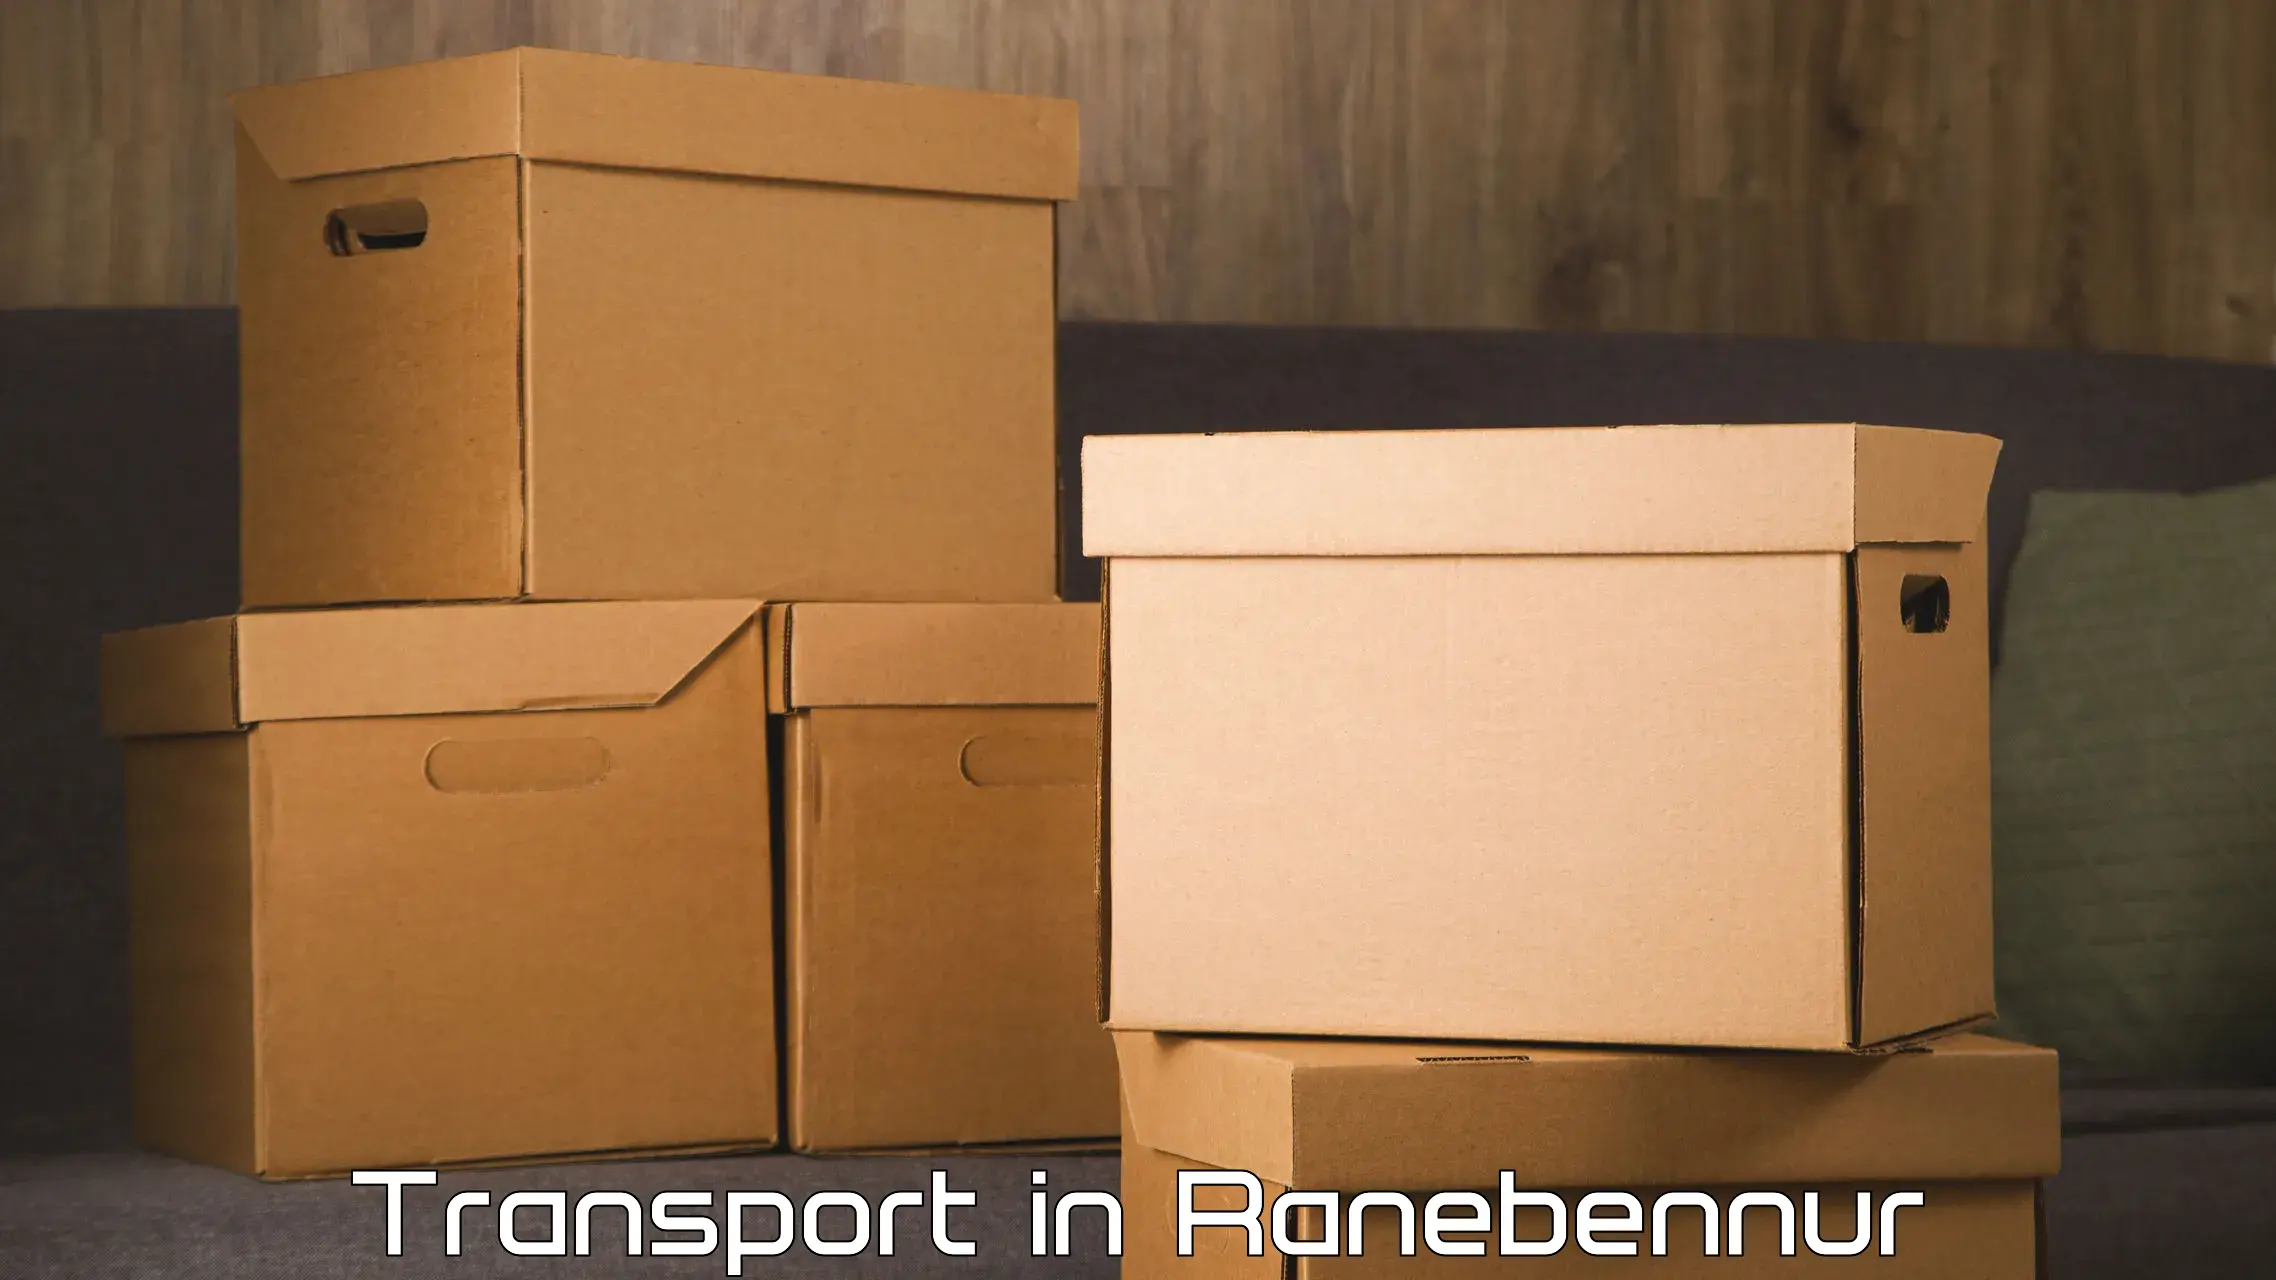 Daily parcel service transport in Ranebennur